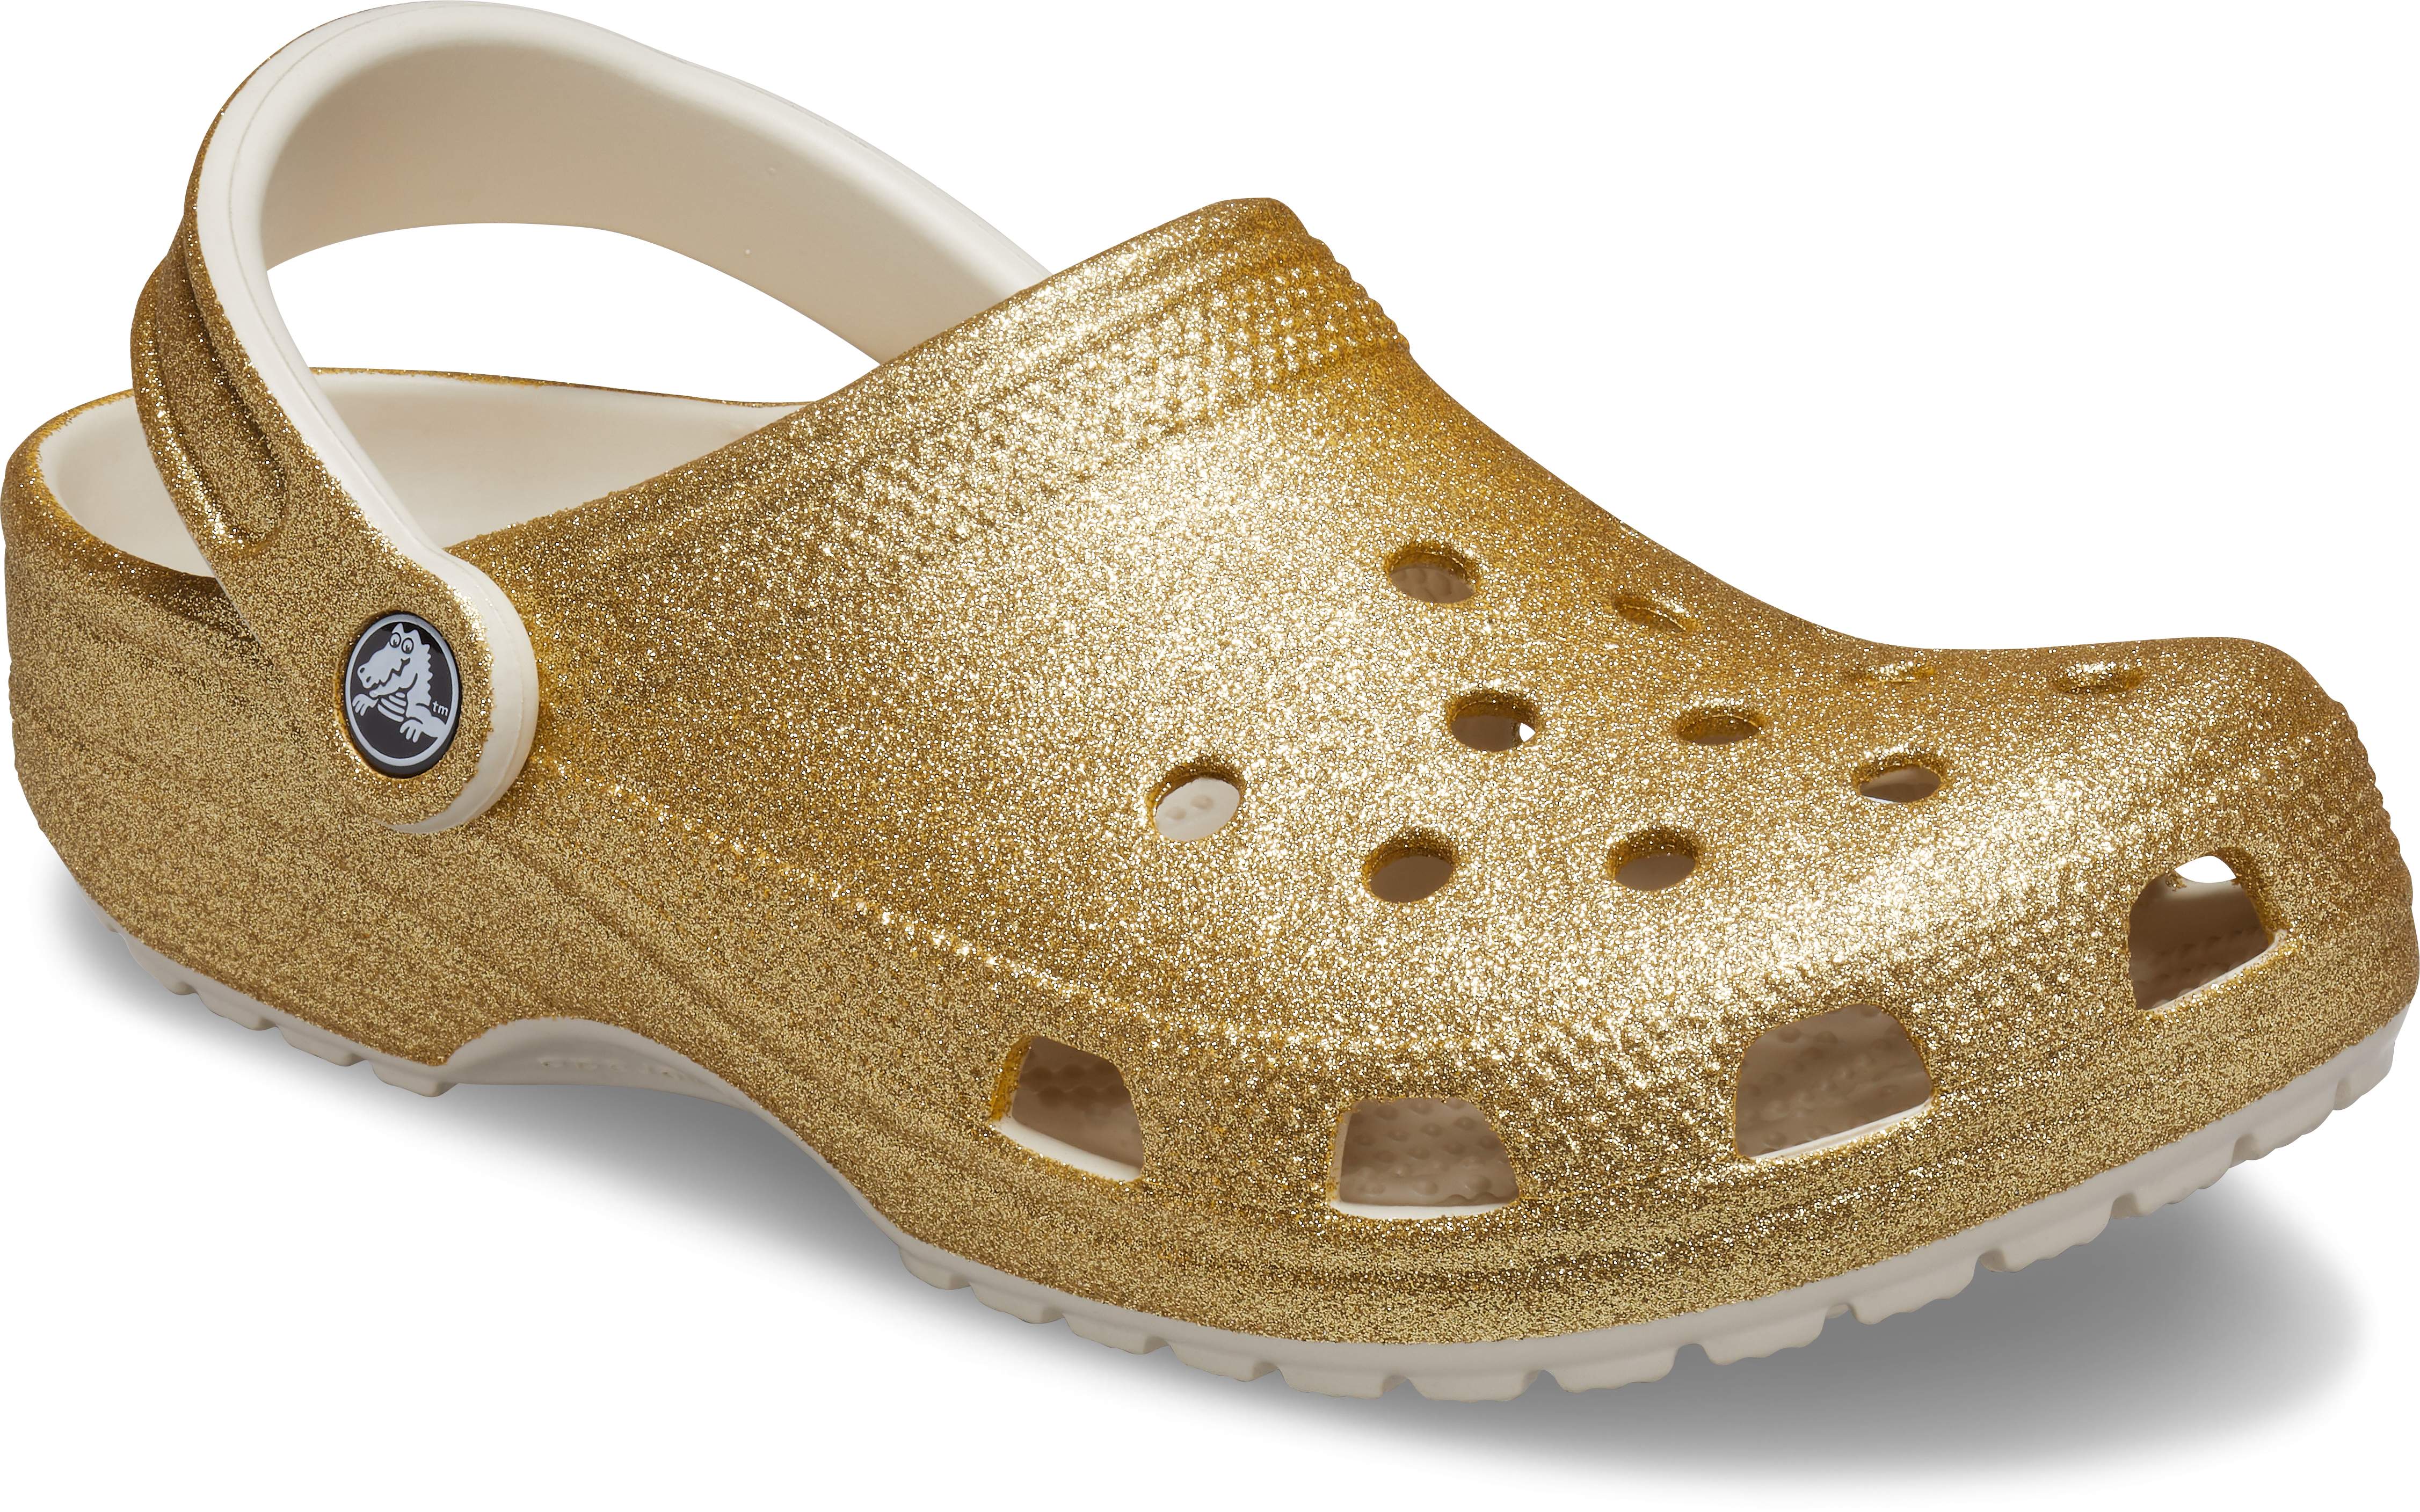 glitter crocs